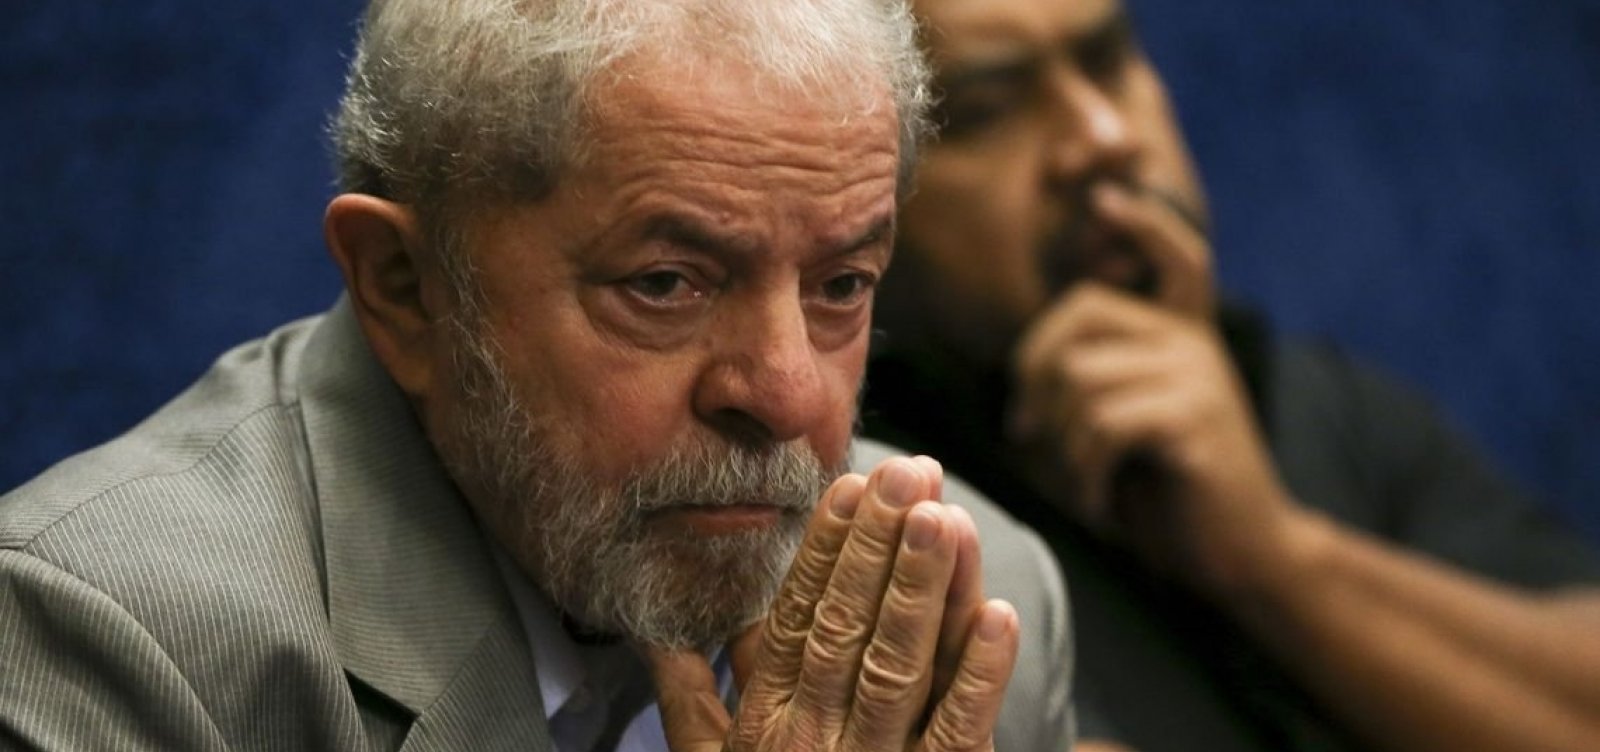 Maioria acredita que soltura de Lula foi justa, diz Datafolha